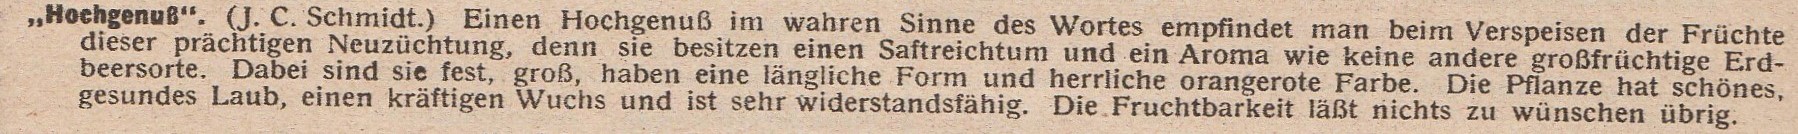 Schmidt-1927- (2)